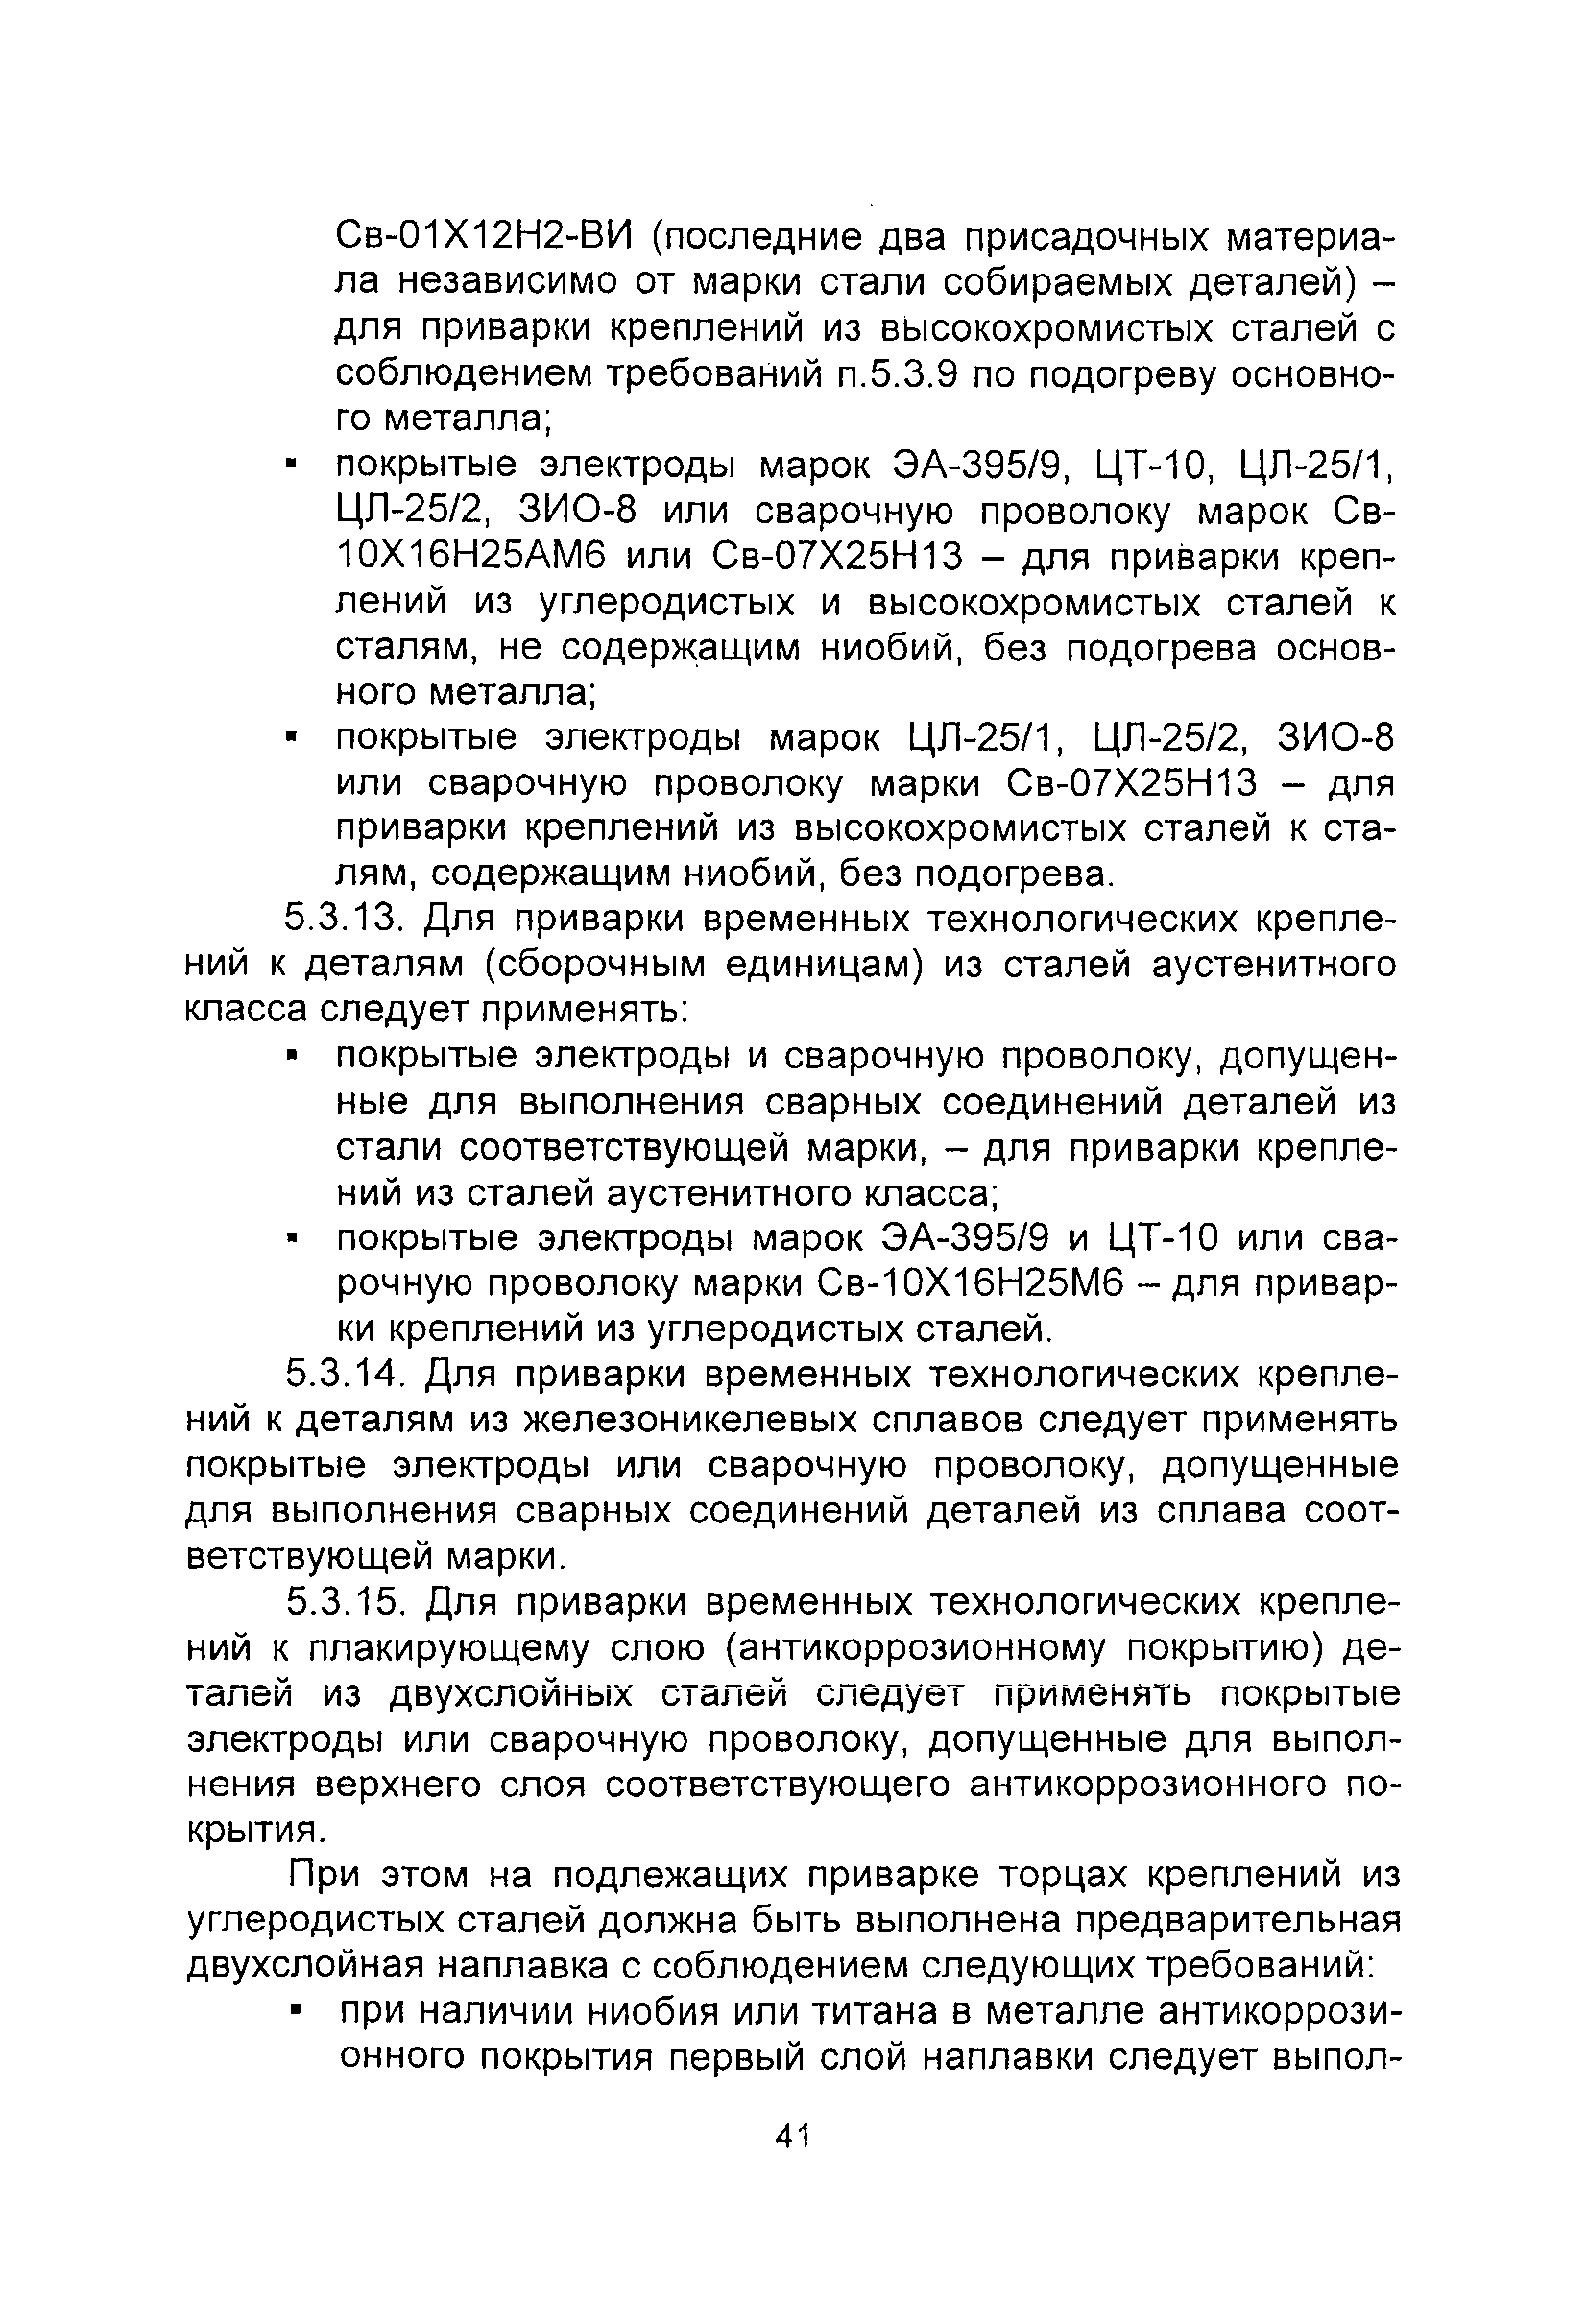 Пнаэ г 7 010 89 скачать pdf